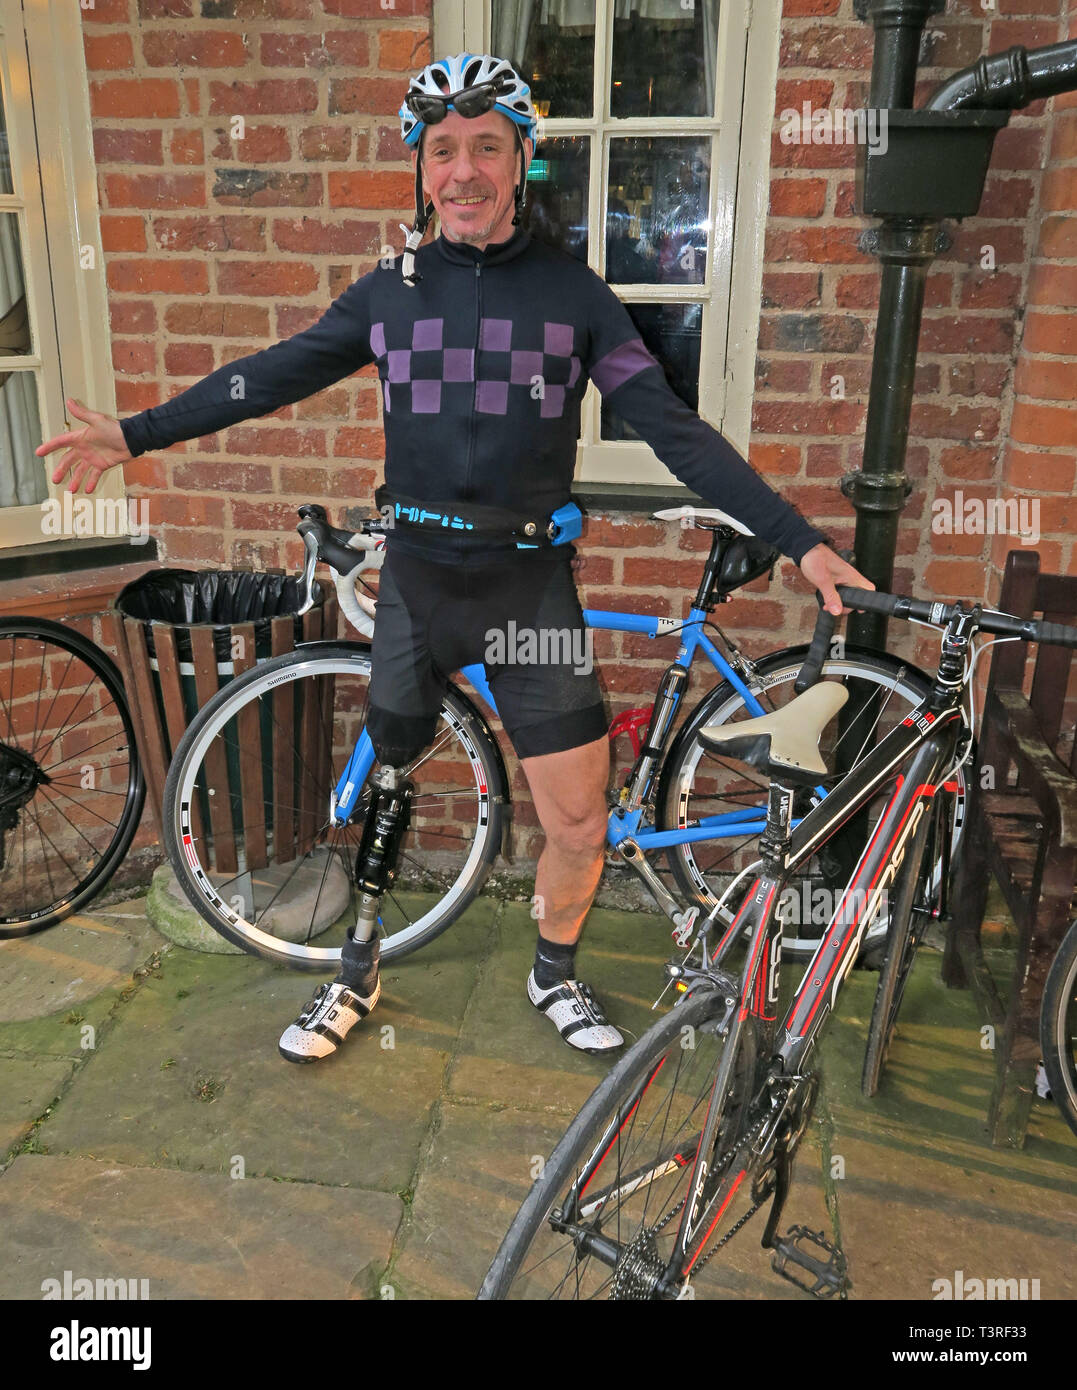 Keith, ciclisti con una gamba protesica, in Lycra abbigliamento ciclistico, al Vine Inn, Barns Lane, Dunham Town, Cheshire, Inghilterra, REGNO UNITO, WA14 5RU Foto Stock